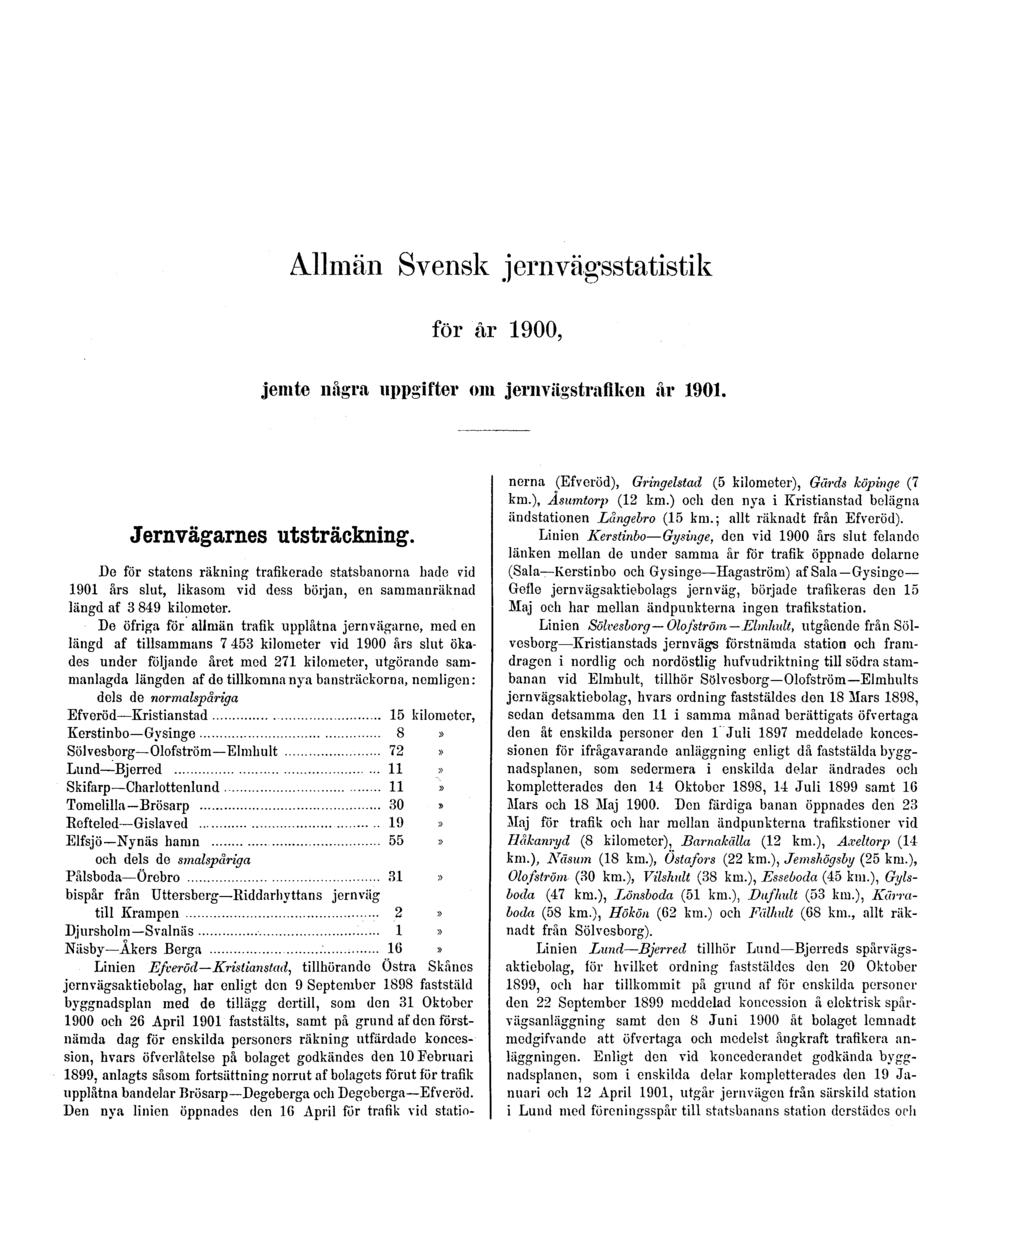 Allmän Svensk jernvägsstatistik för år 1900, jemte några uppgifter om jernvägstrafiken år 1901. Jernvägarnes utsträckning.